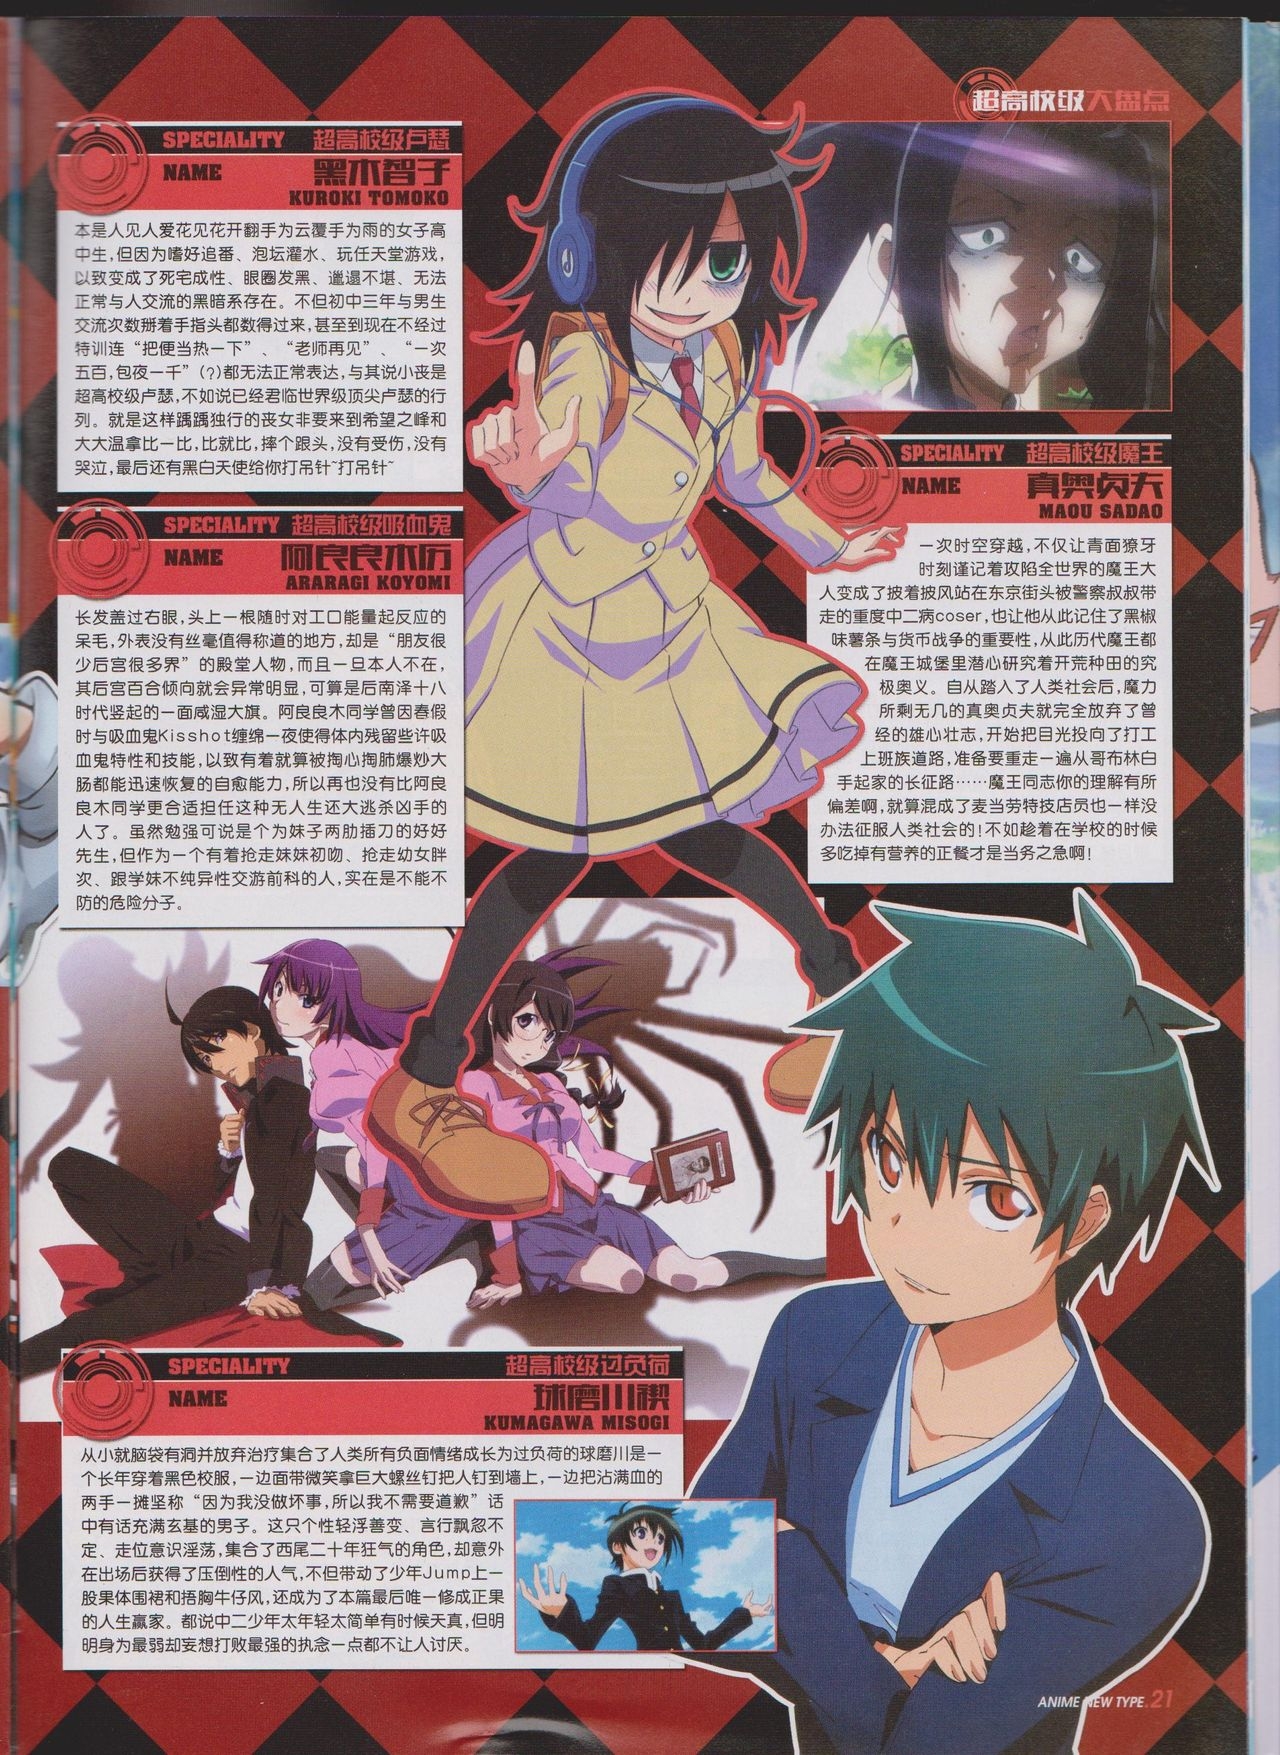 Anime New Type Vol.127 22